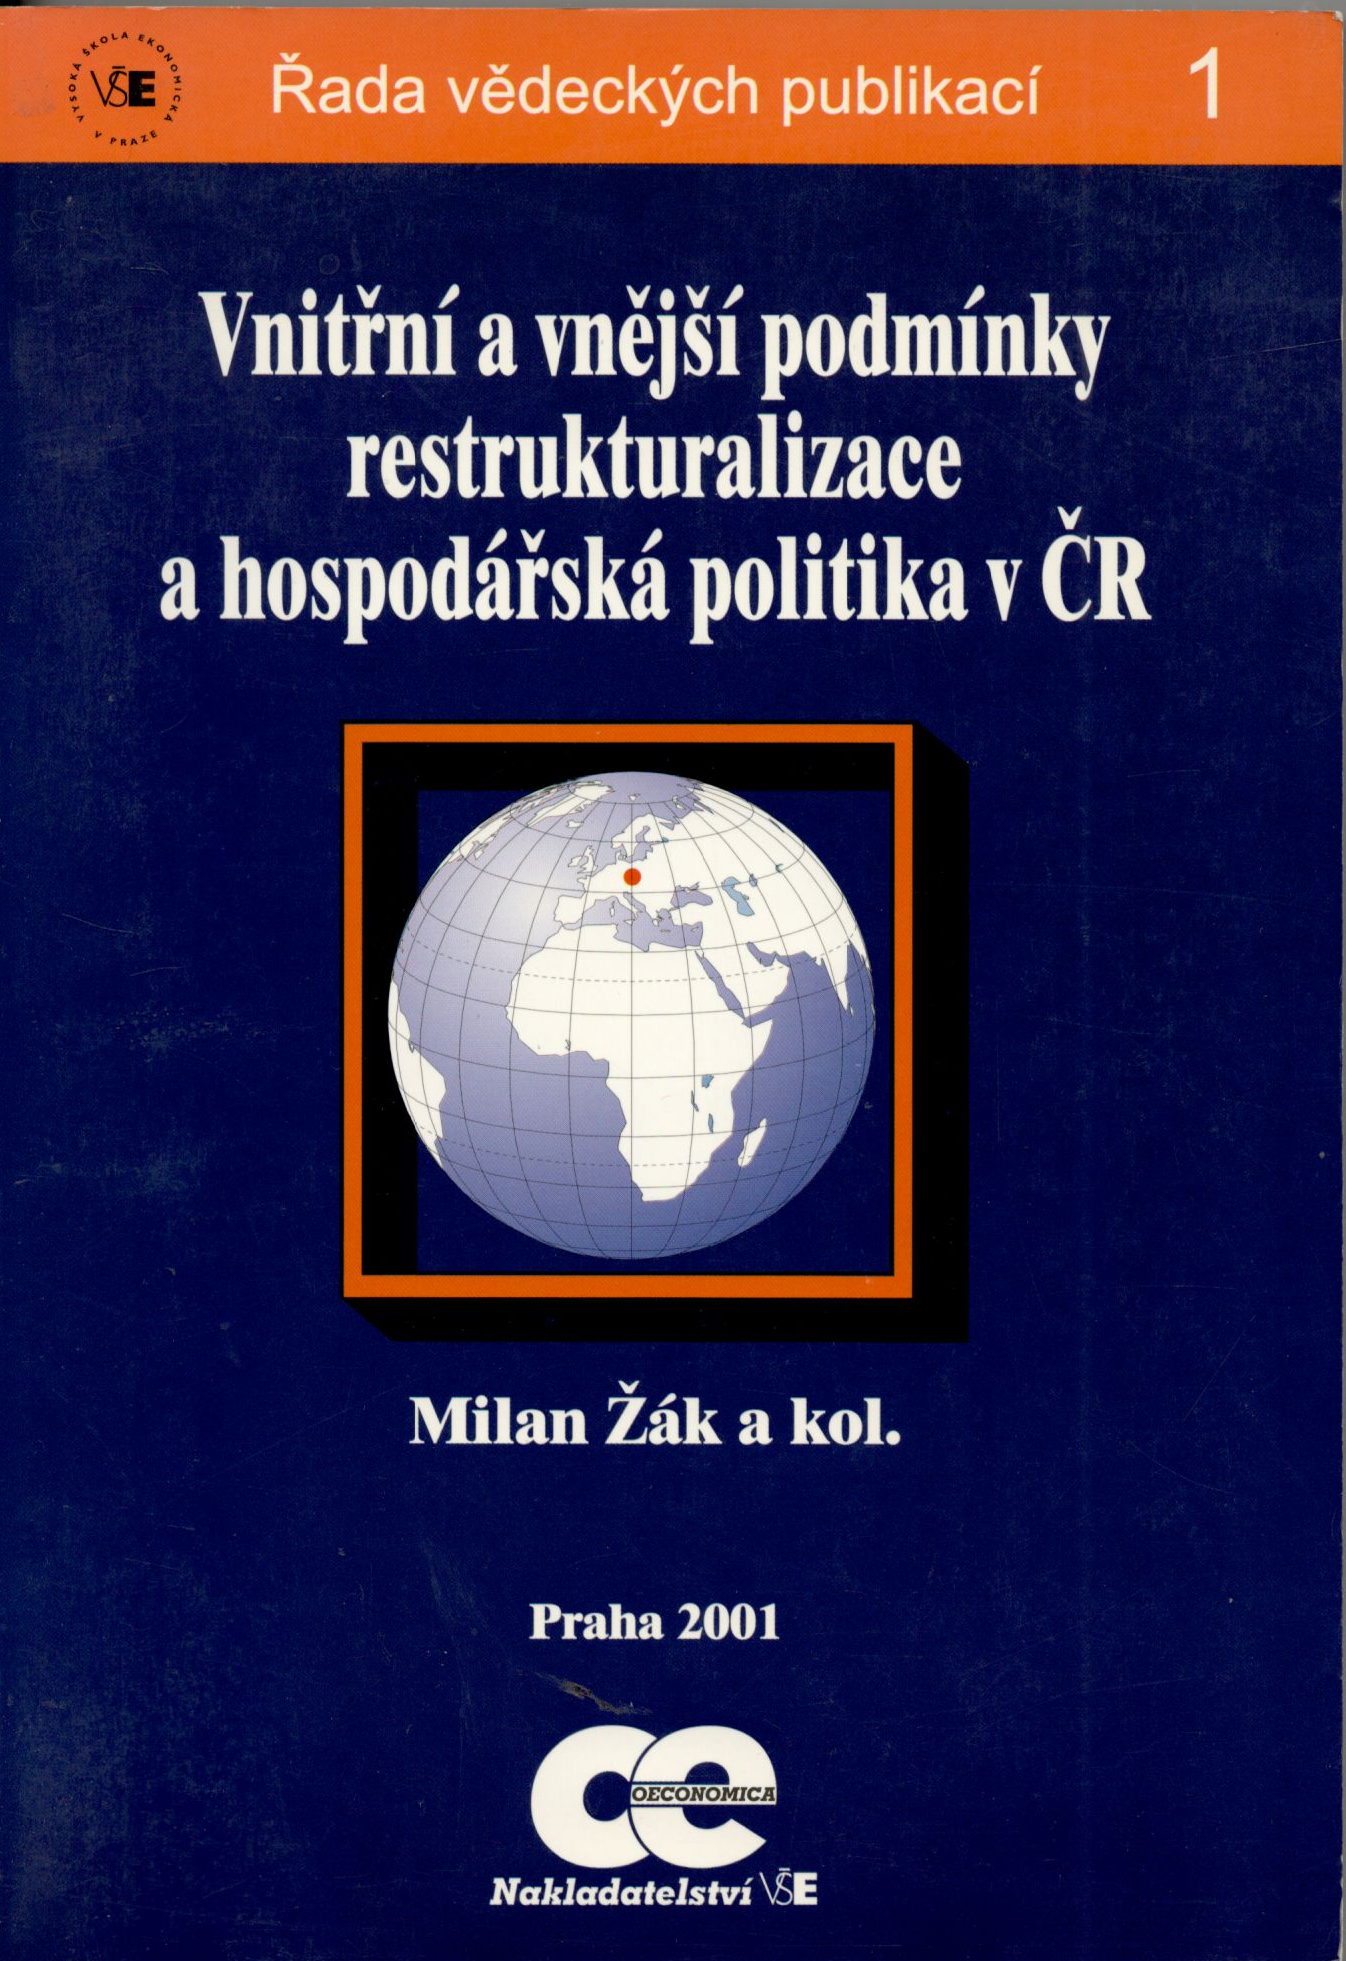 Vnitřní a vnější pomínky restrukturalizace a hospodářská politika v ČR